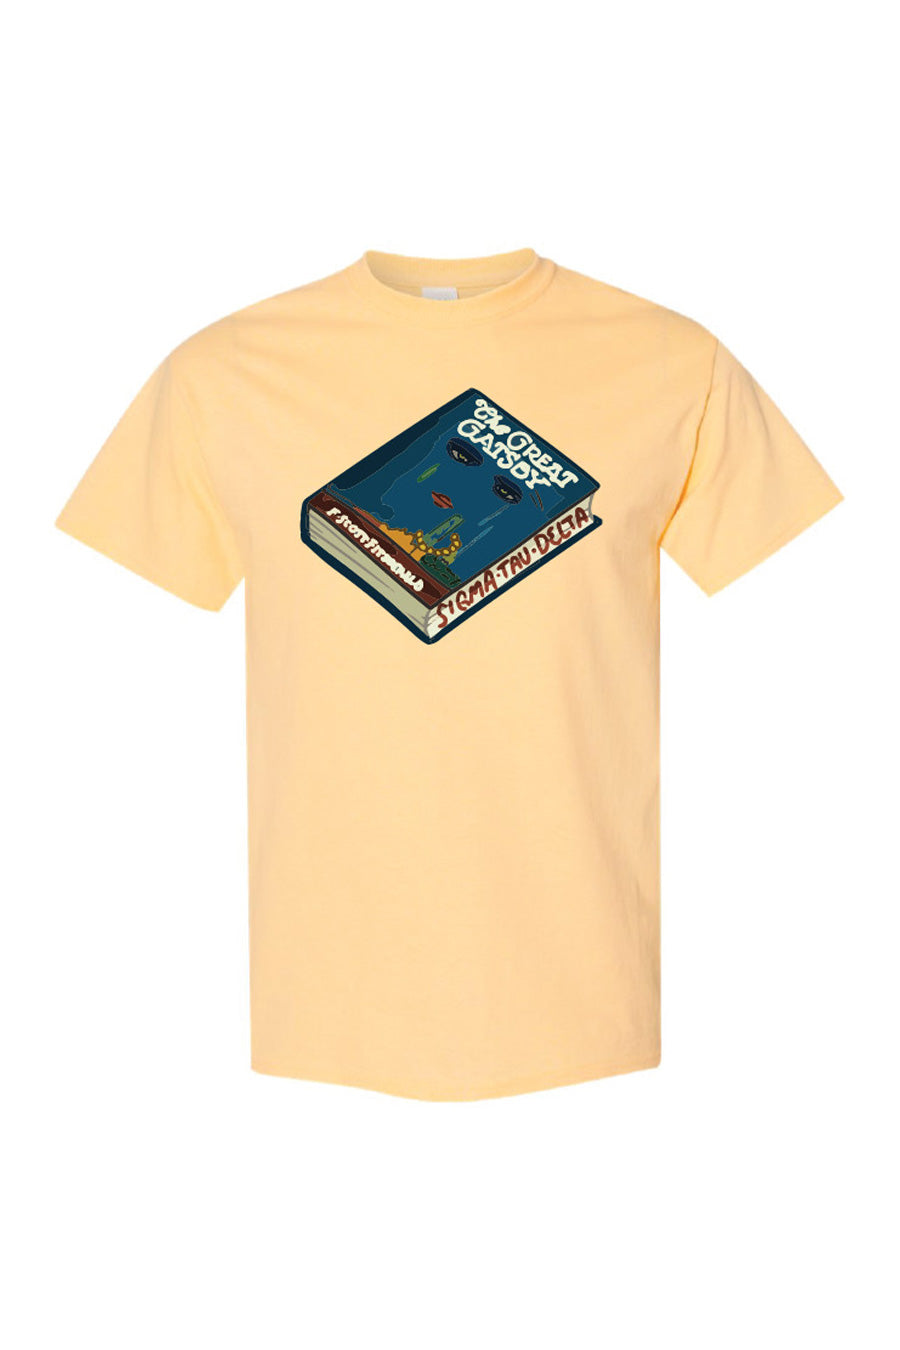 ΣΤΔ through the Decades - The 20s T-shirt (Multiple Colors Available)